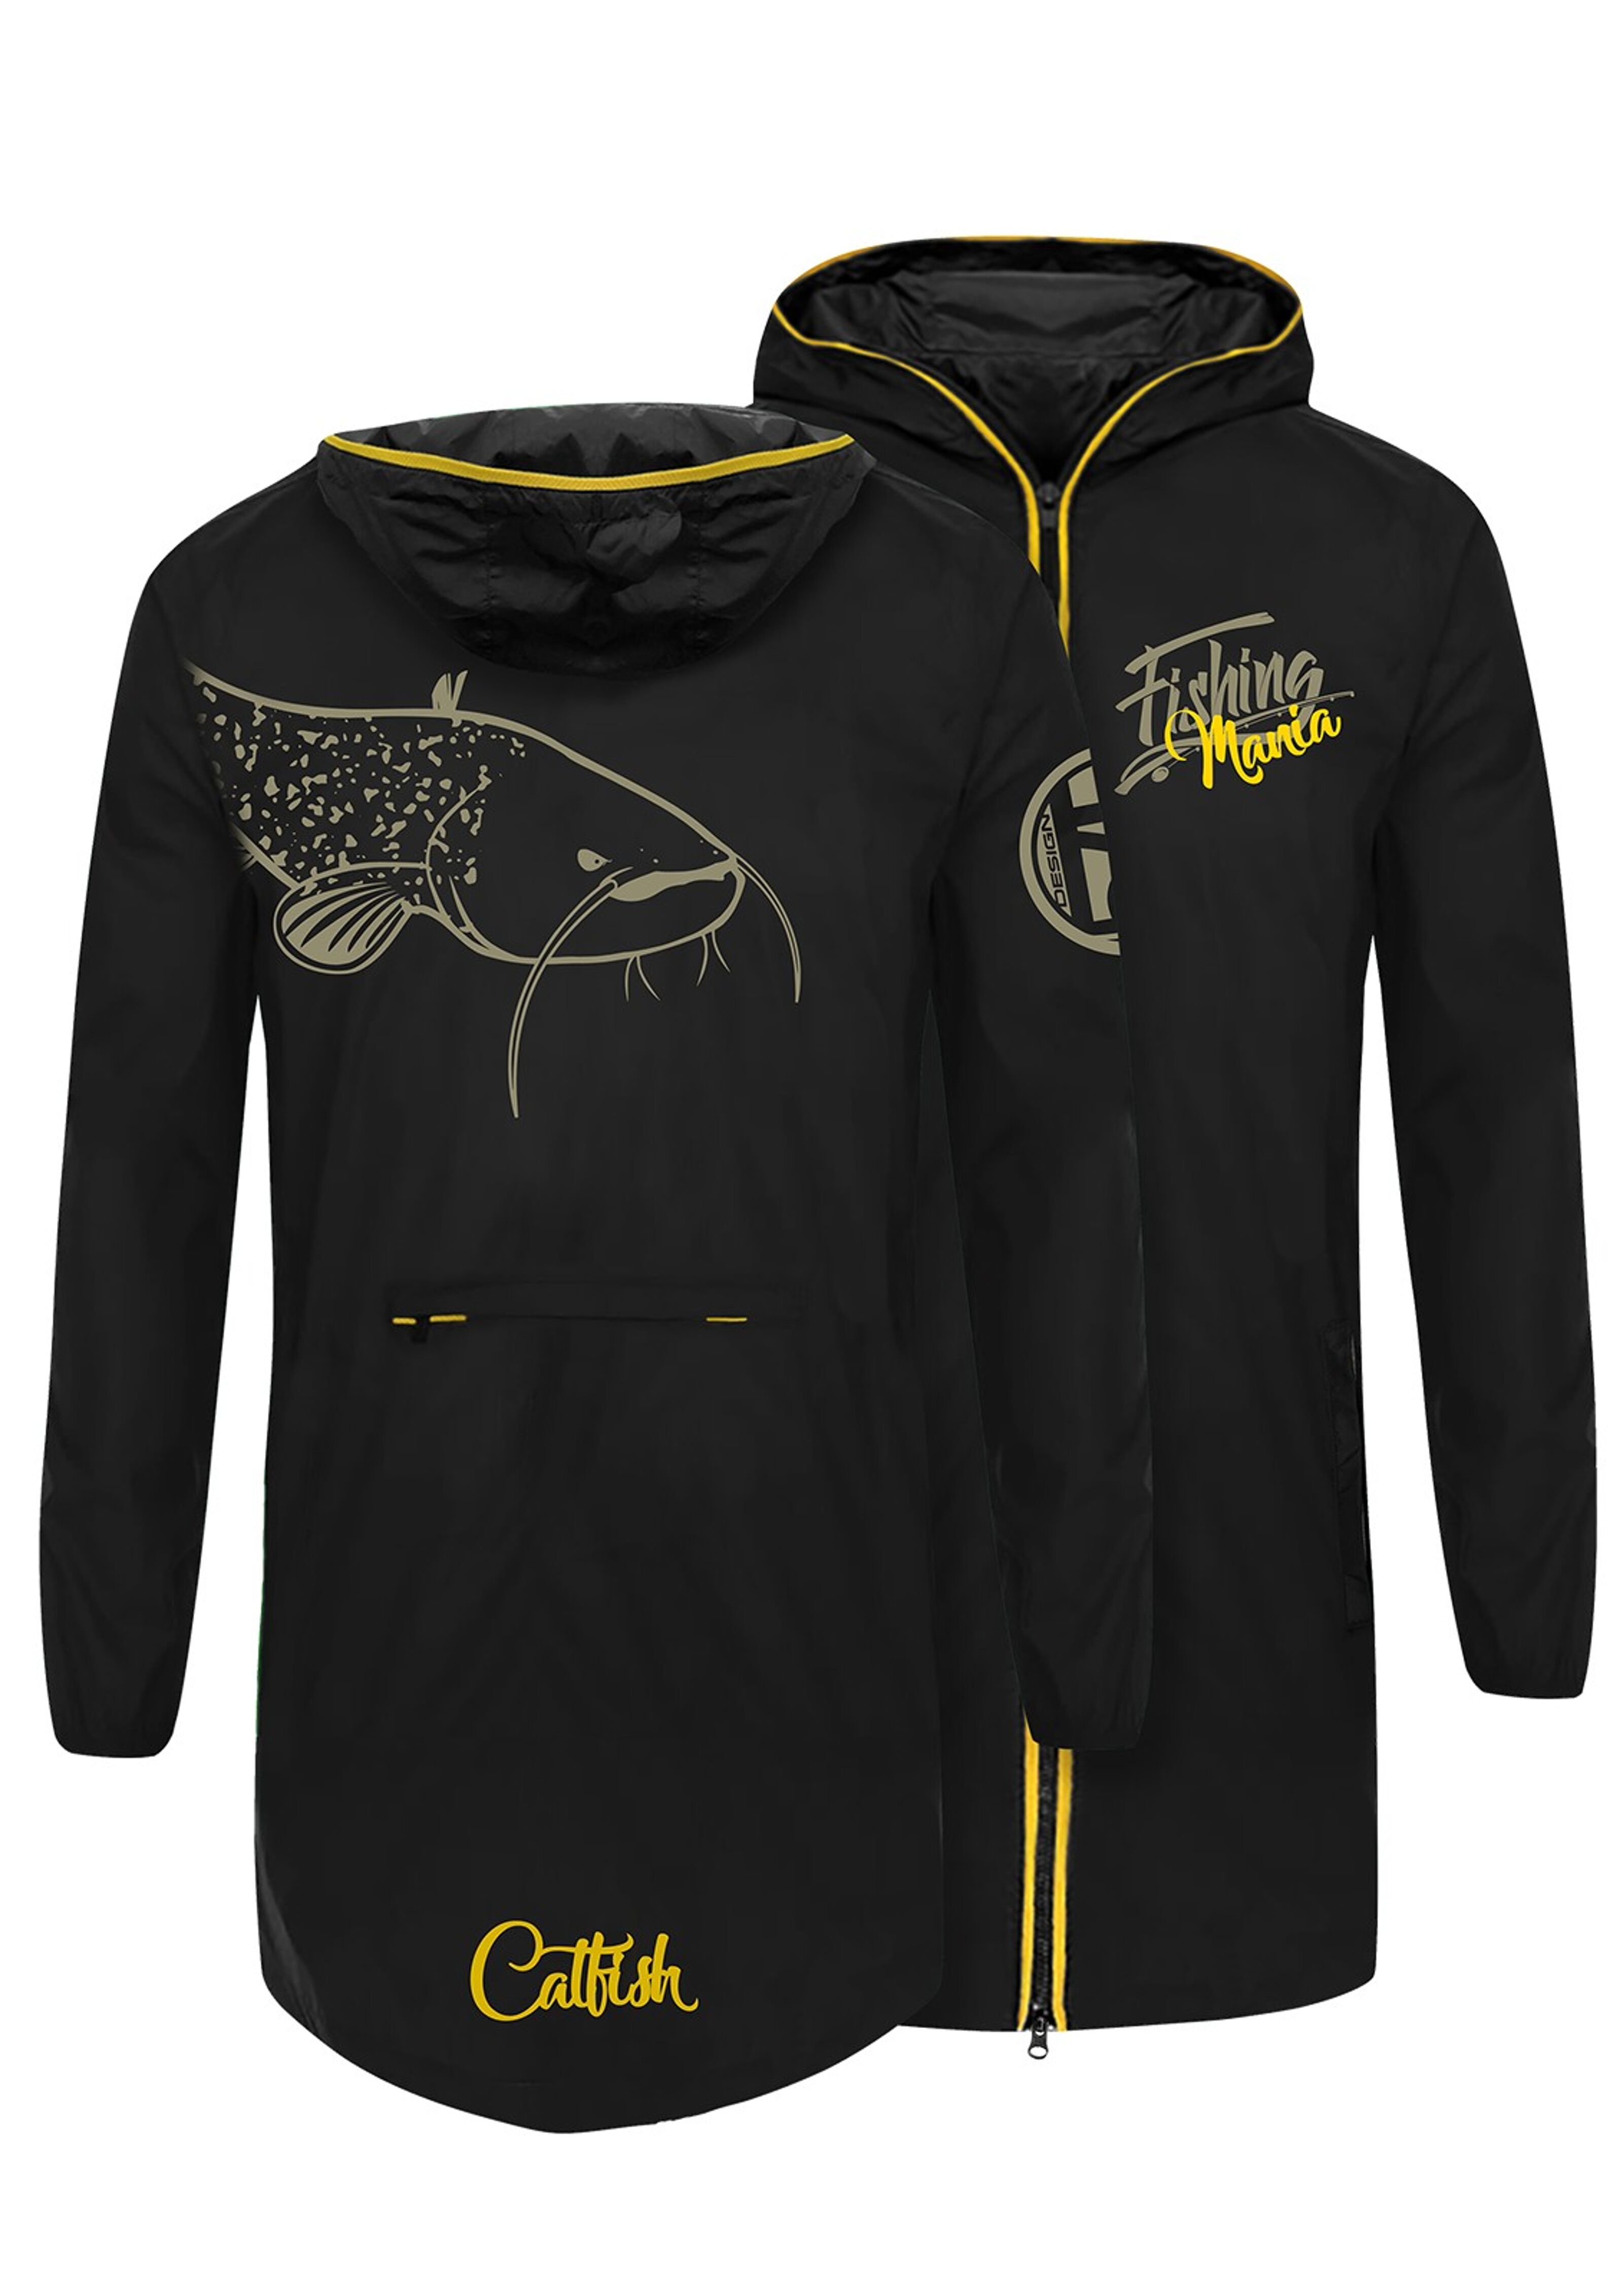 T-shirt Hotspot Design Fishing Mania Catfish size M